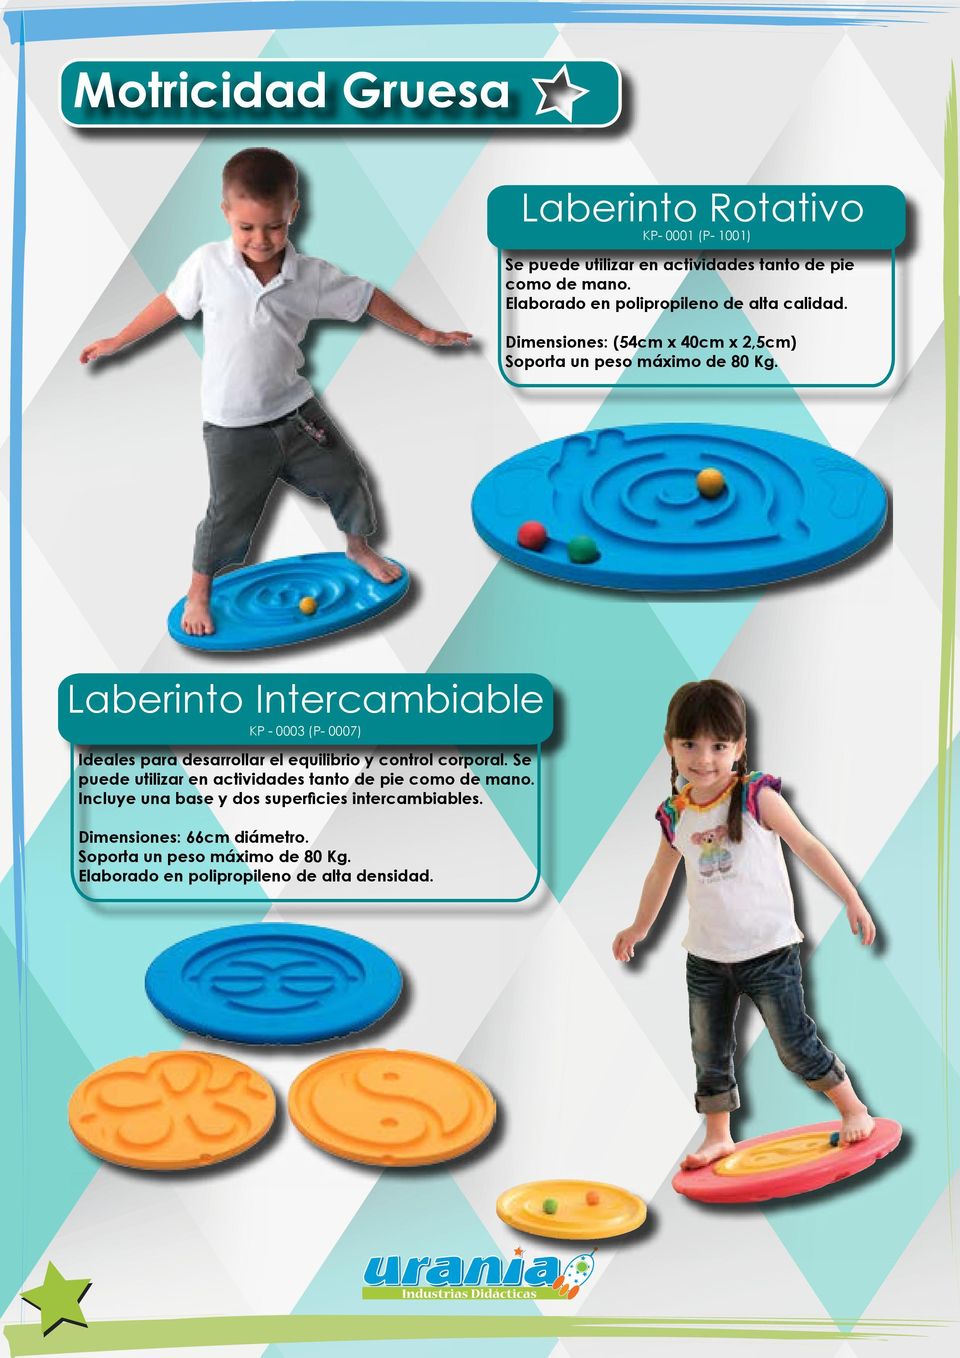 Laberinto Intercambiable KP - 0003 (P- 0007) Ideales para desarrollar el equilibrio y control corporal.